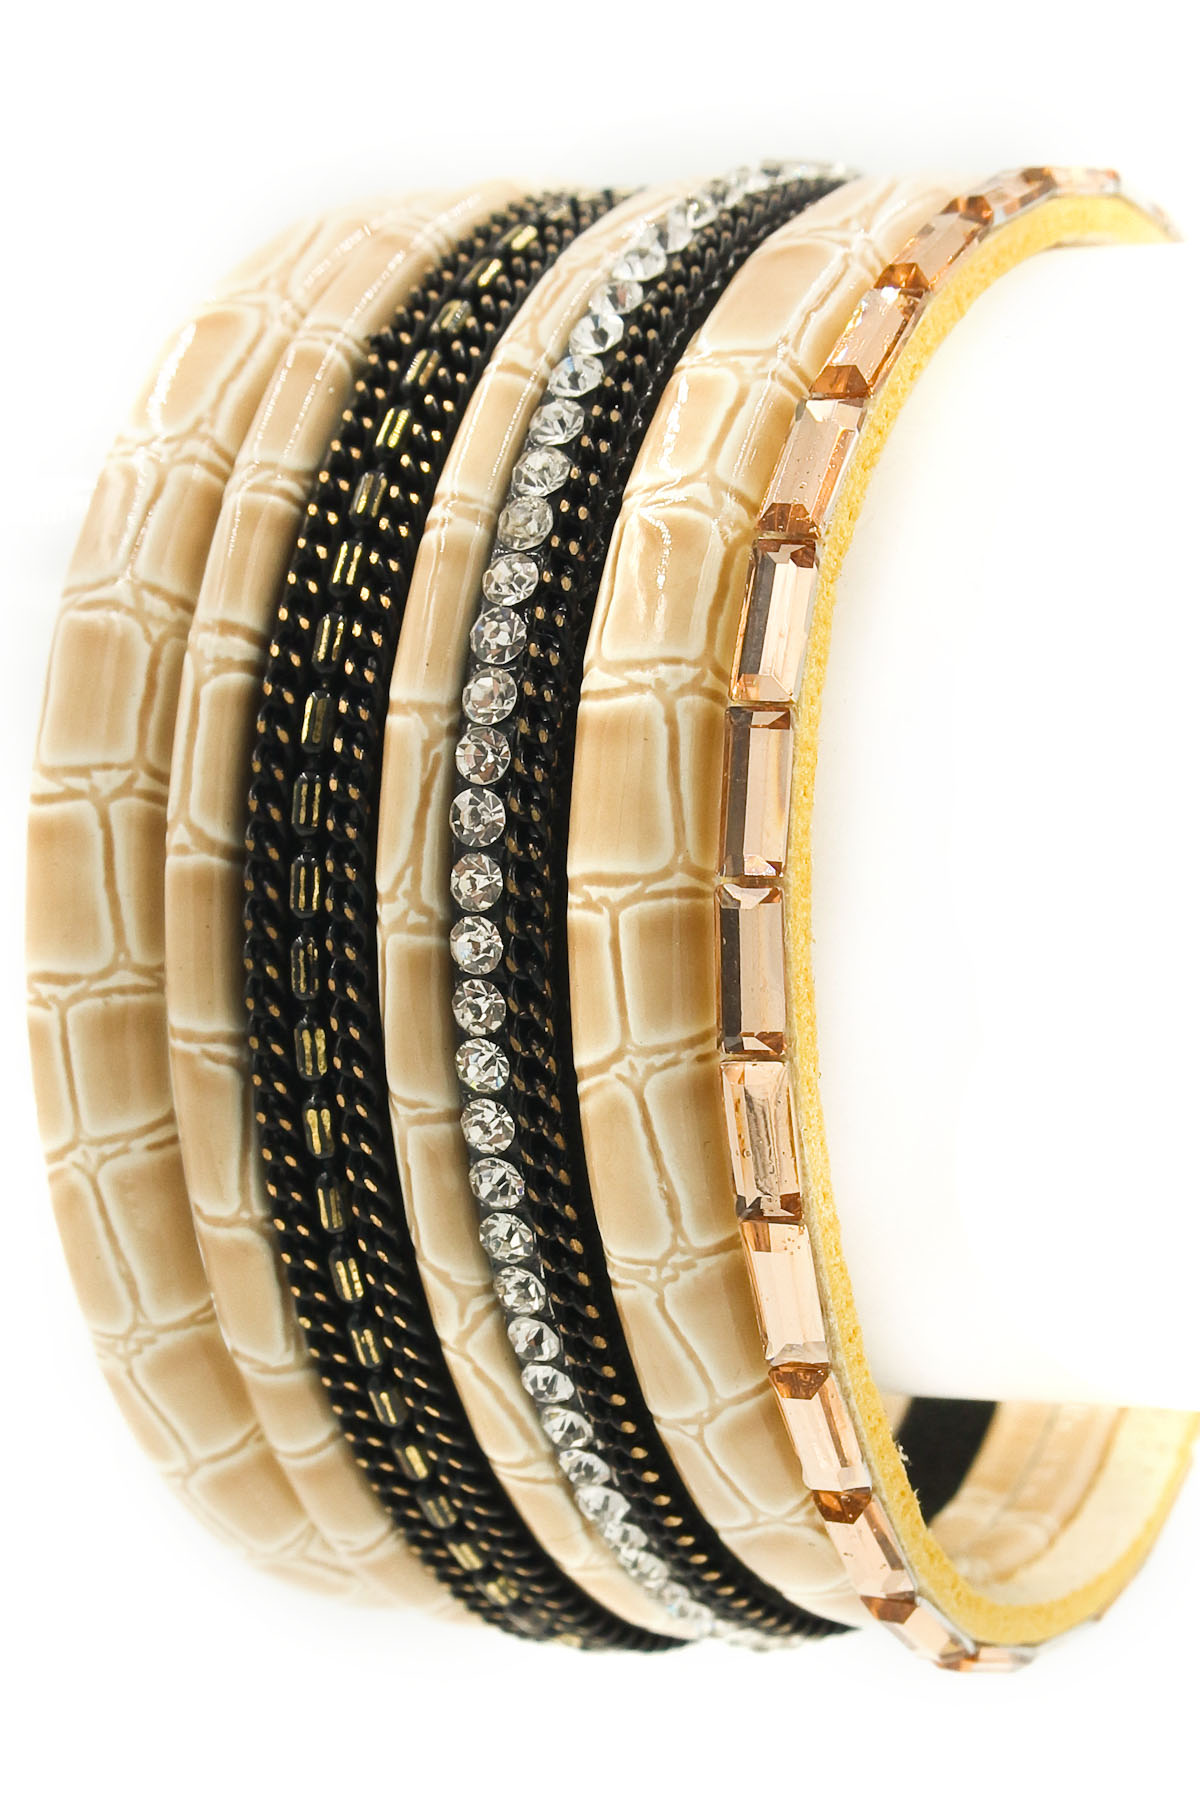 Faux Leather Scale Textured Bracelet - Bracelets